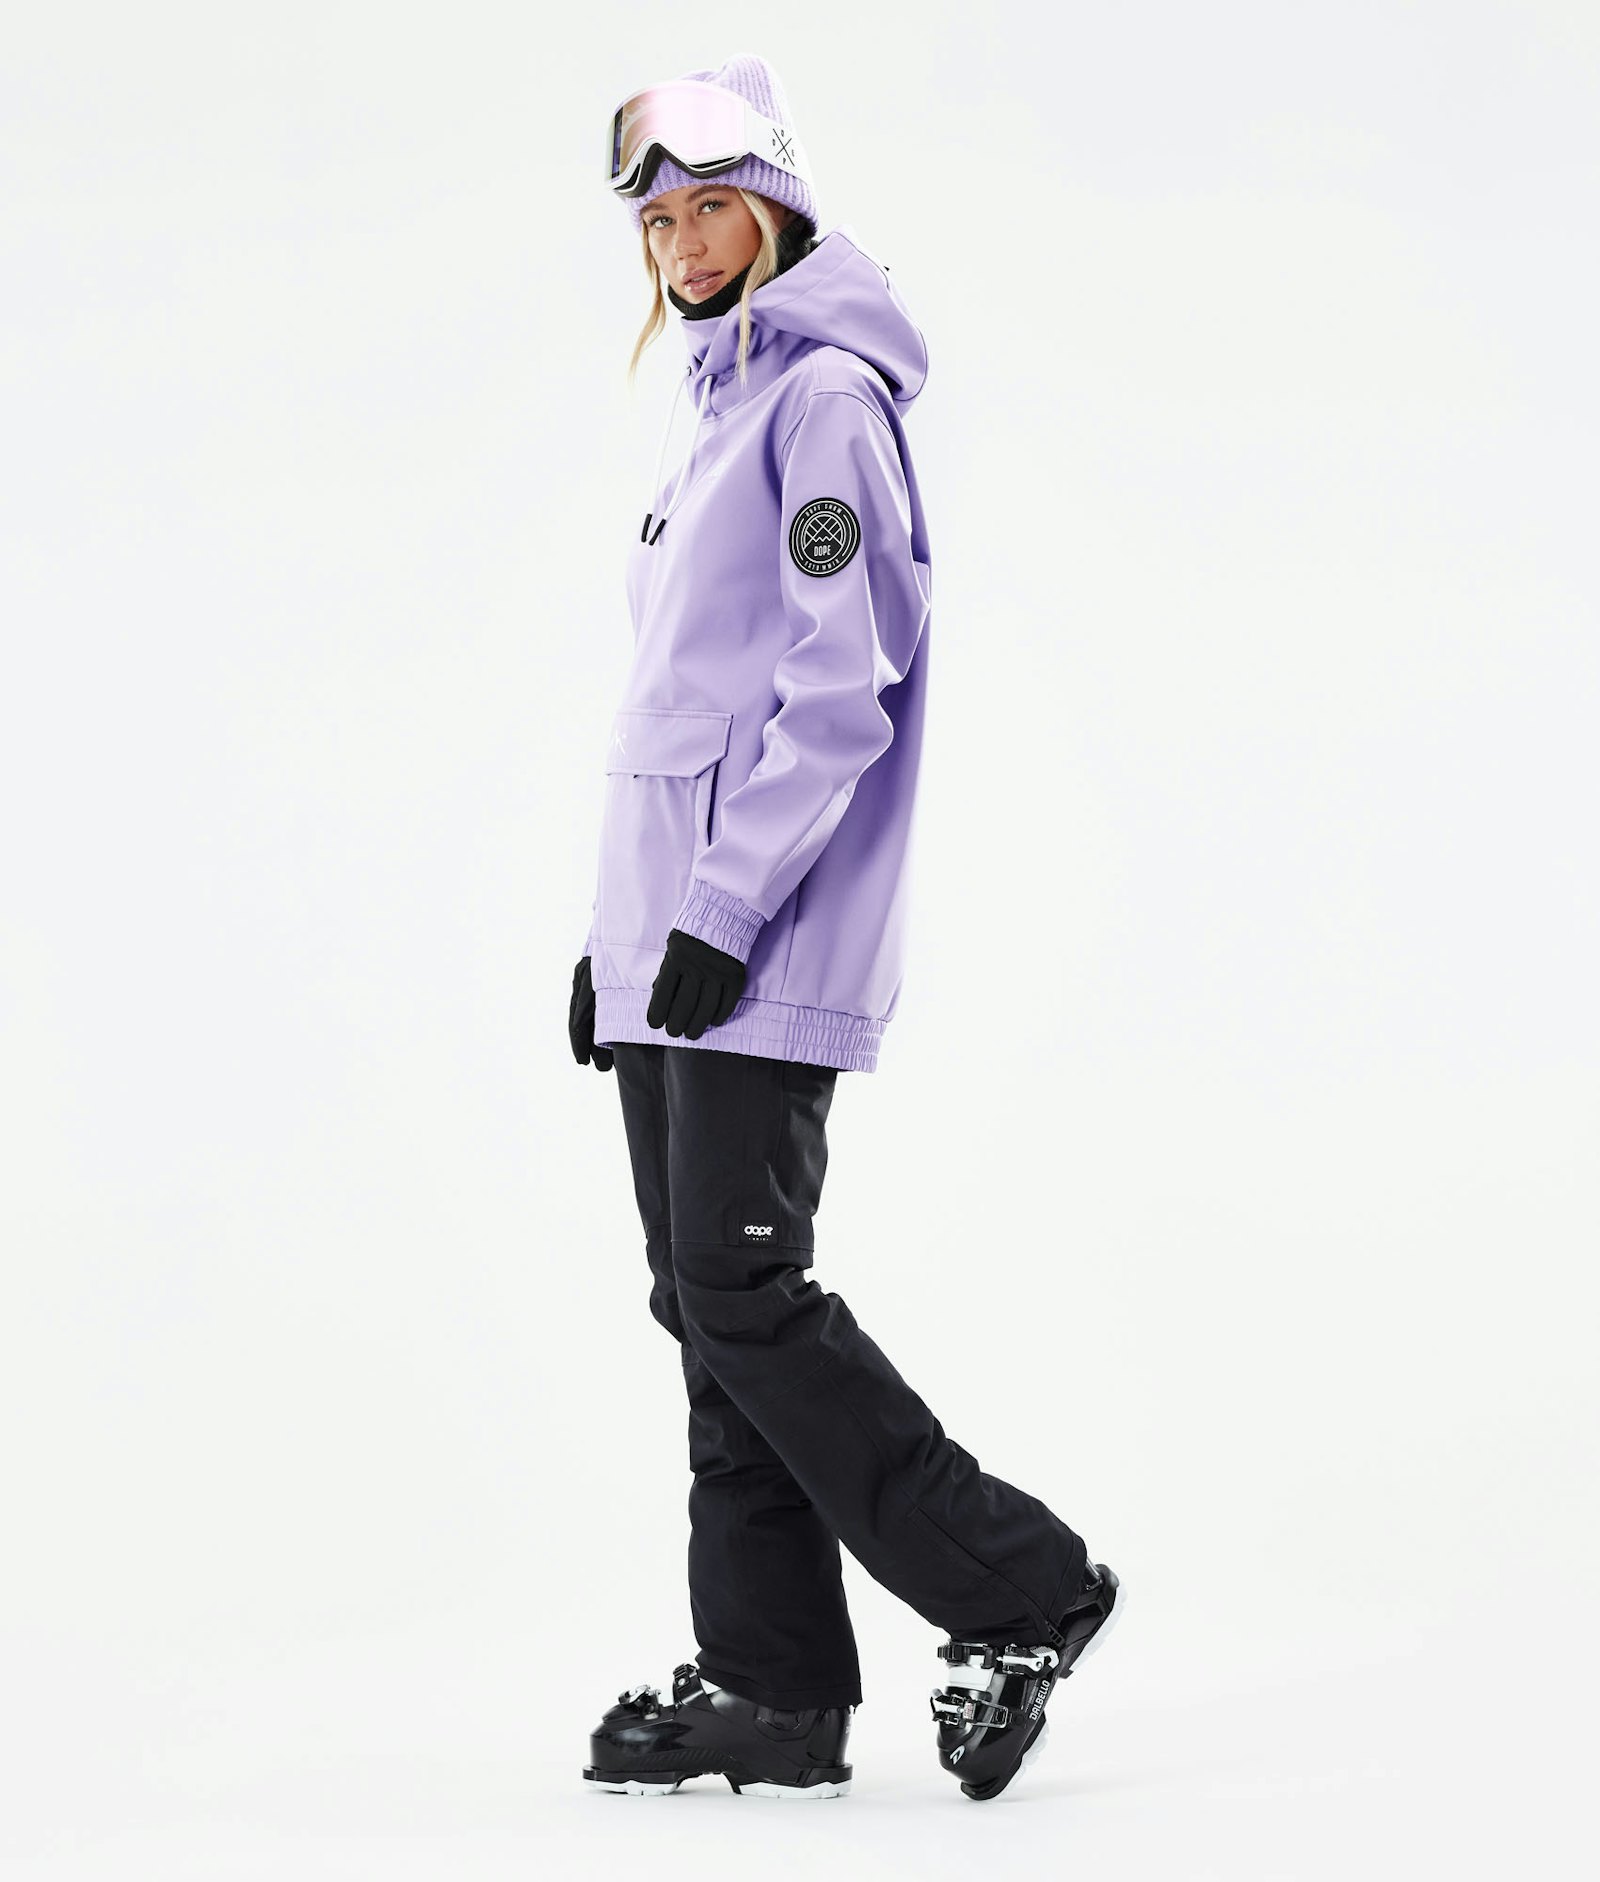 Wylie W Ski Jacket Women Capital Faded Violet